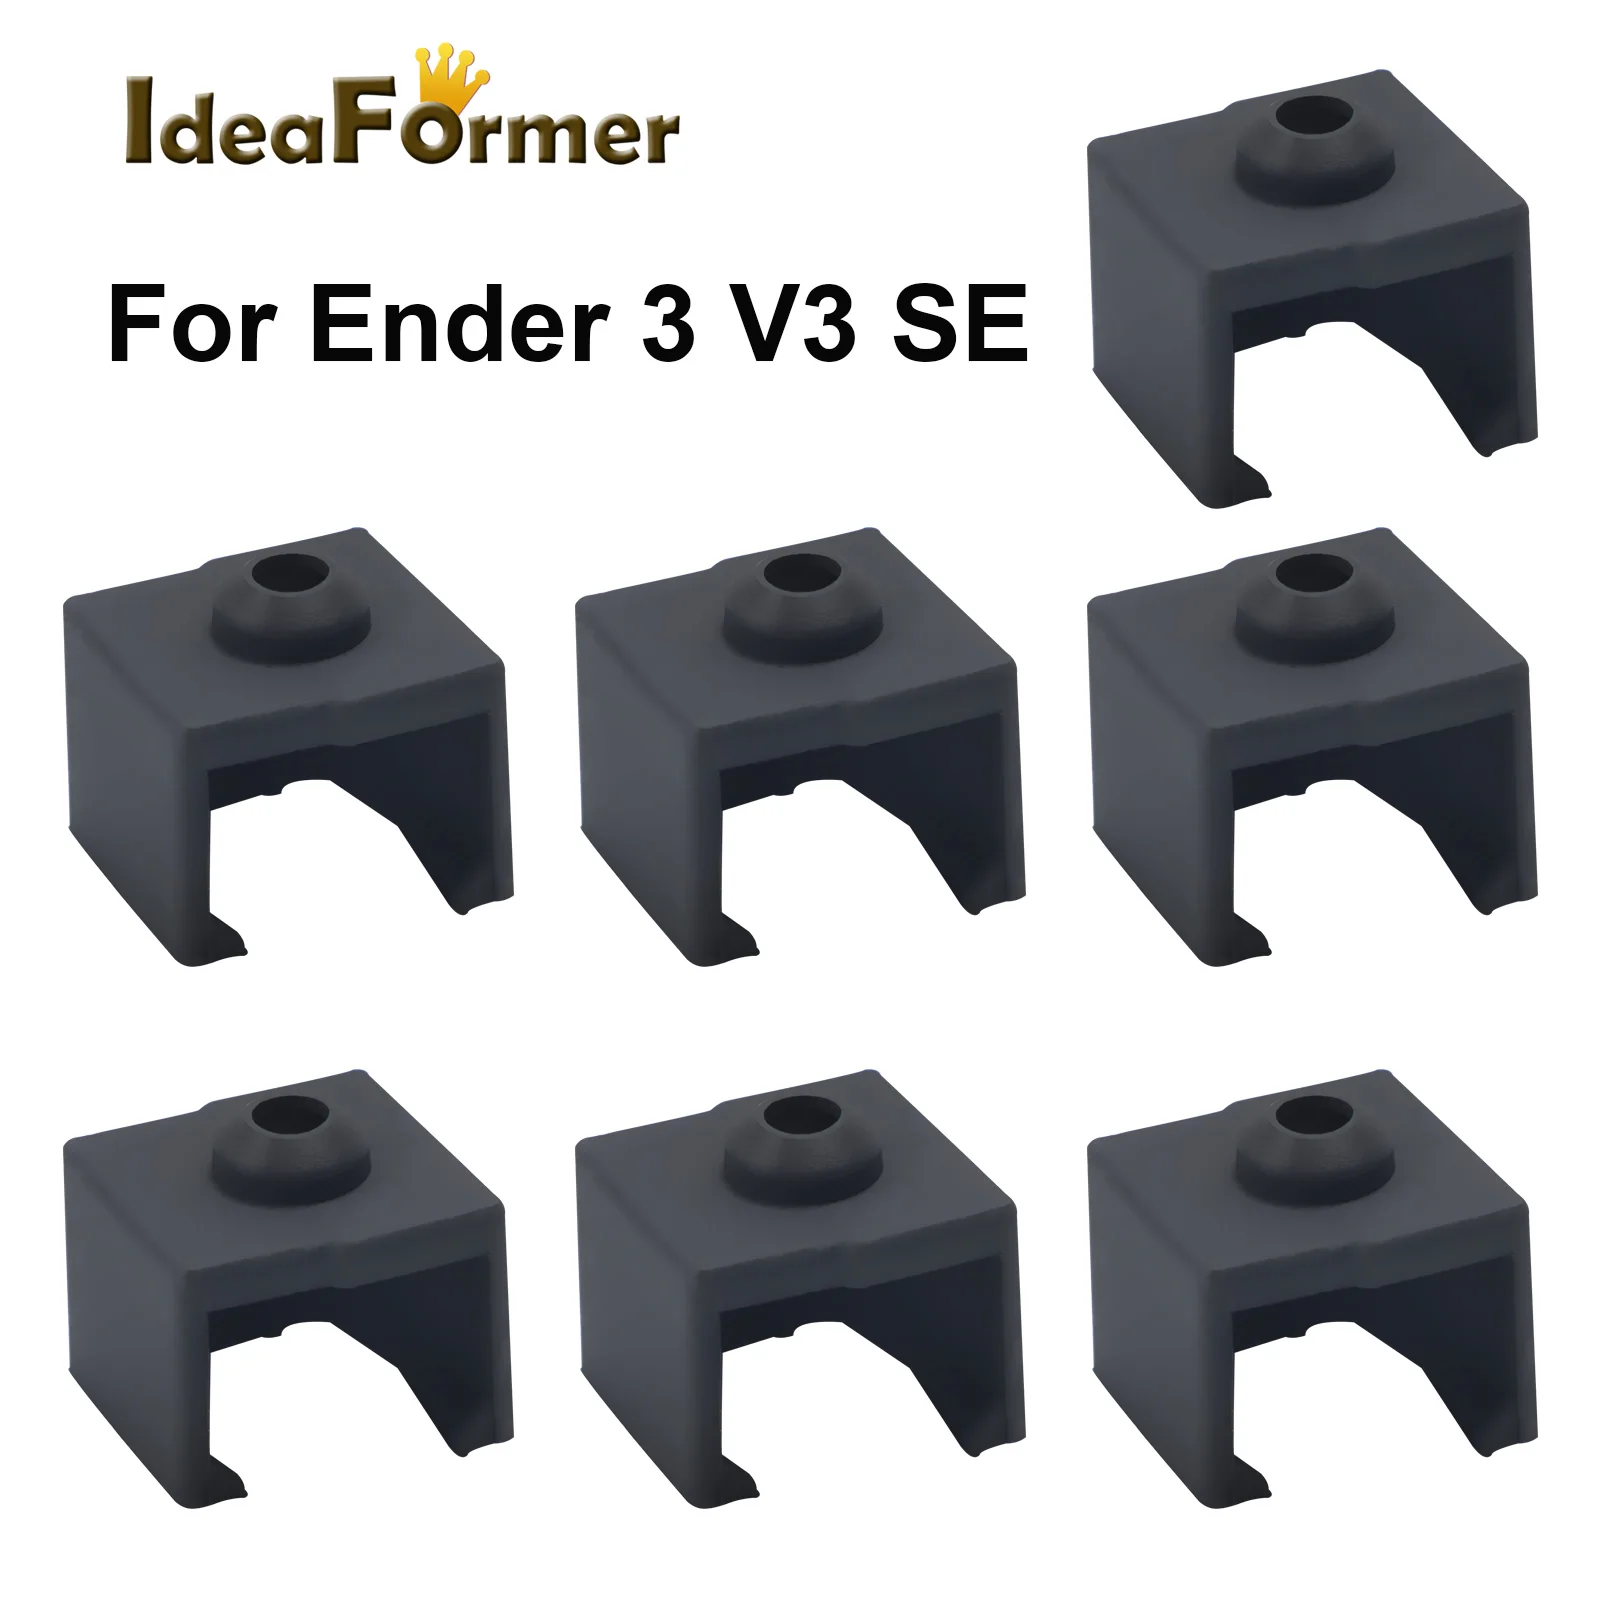 

Hotend Теплоизоляционный нагревательный блок, силиконовые носки, аксессуары для 3D-принтера Ender 3-V3 SE, защитный чехол для носков, тепловой блок